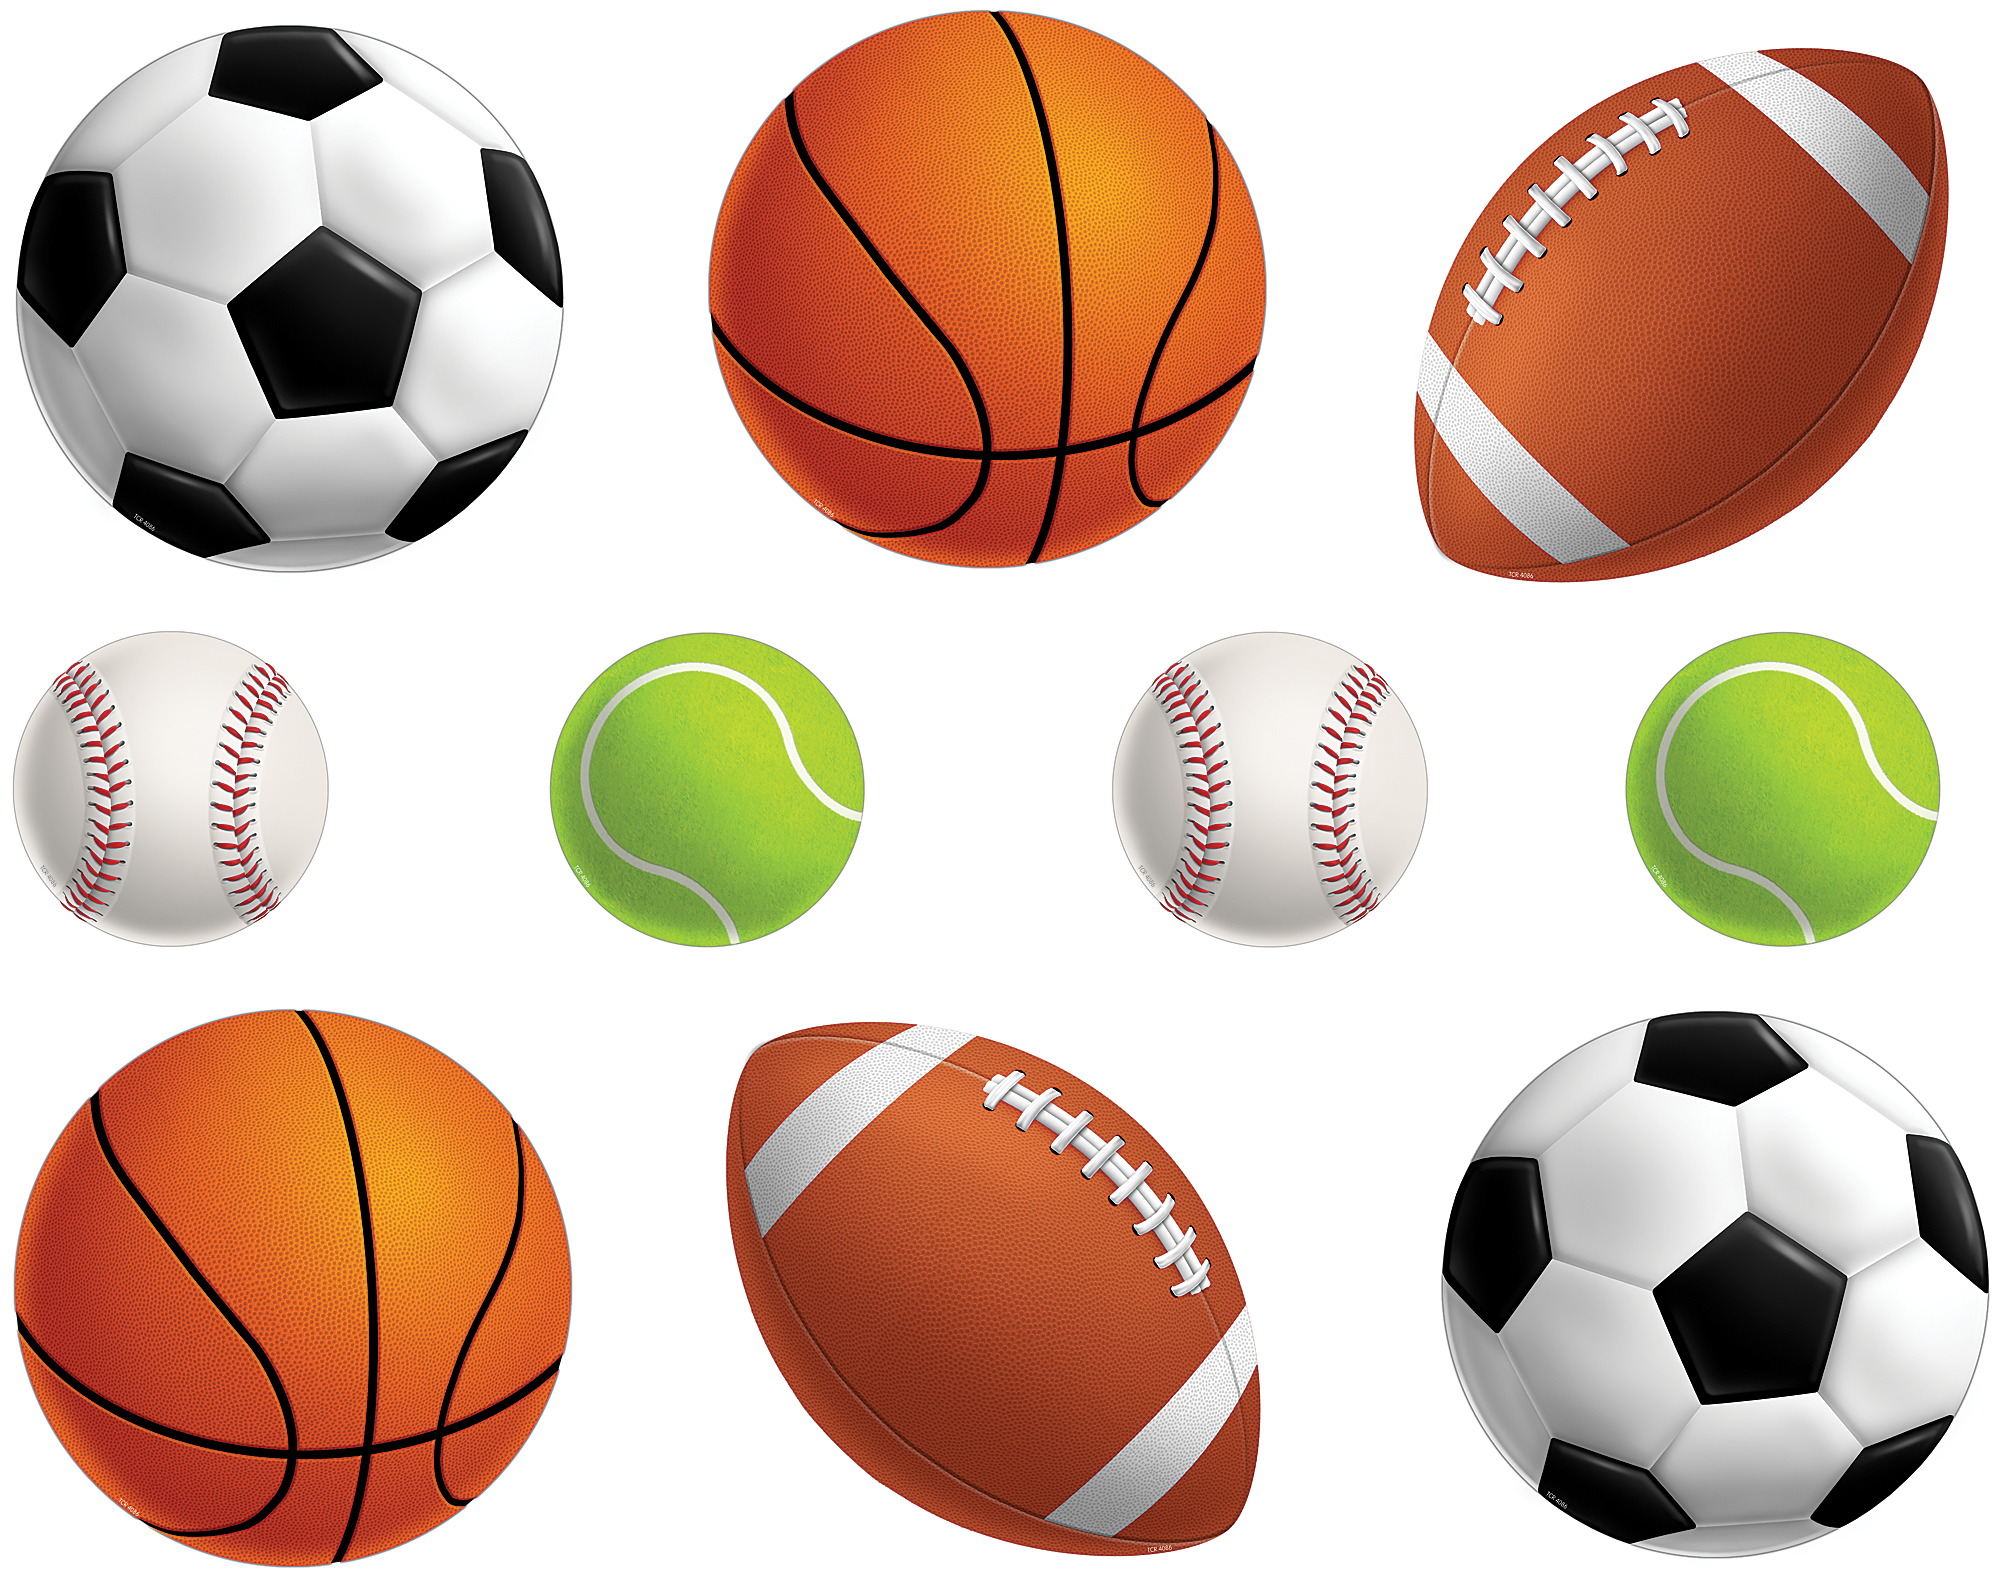 Ball part. Спортивные мячи. Спортивные атрибуты. Спортивный инвентарь мячи. Спортивный инвентарь на прозрачном фоне.